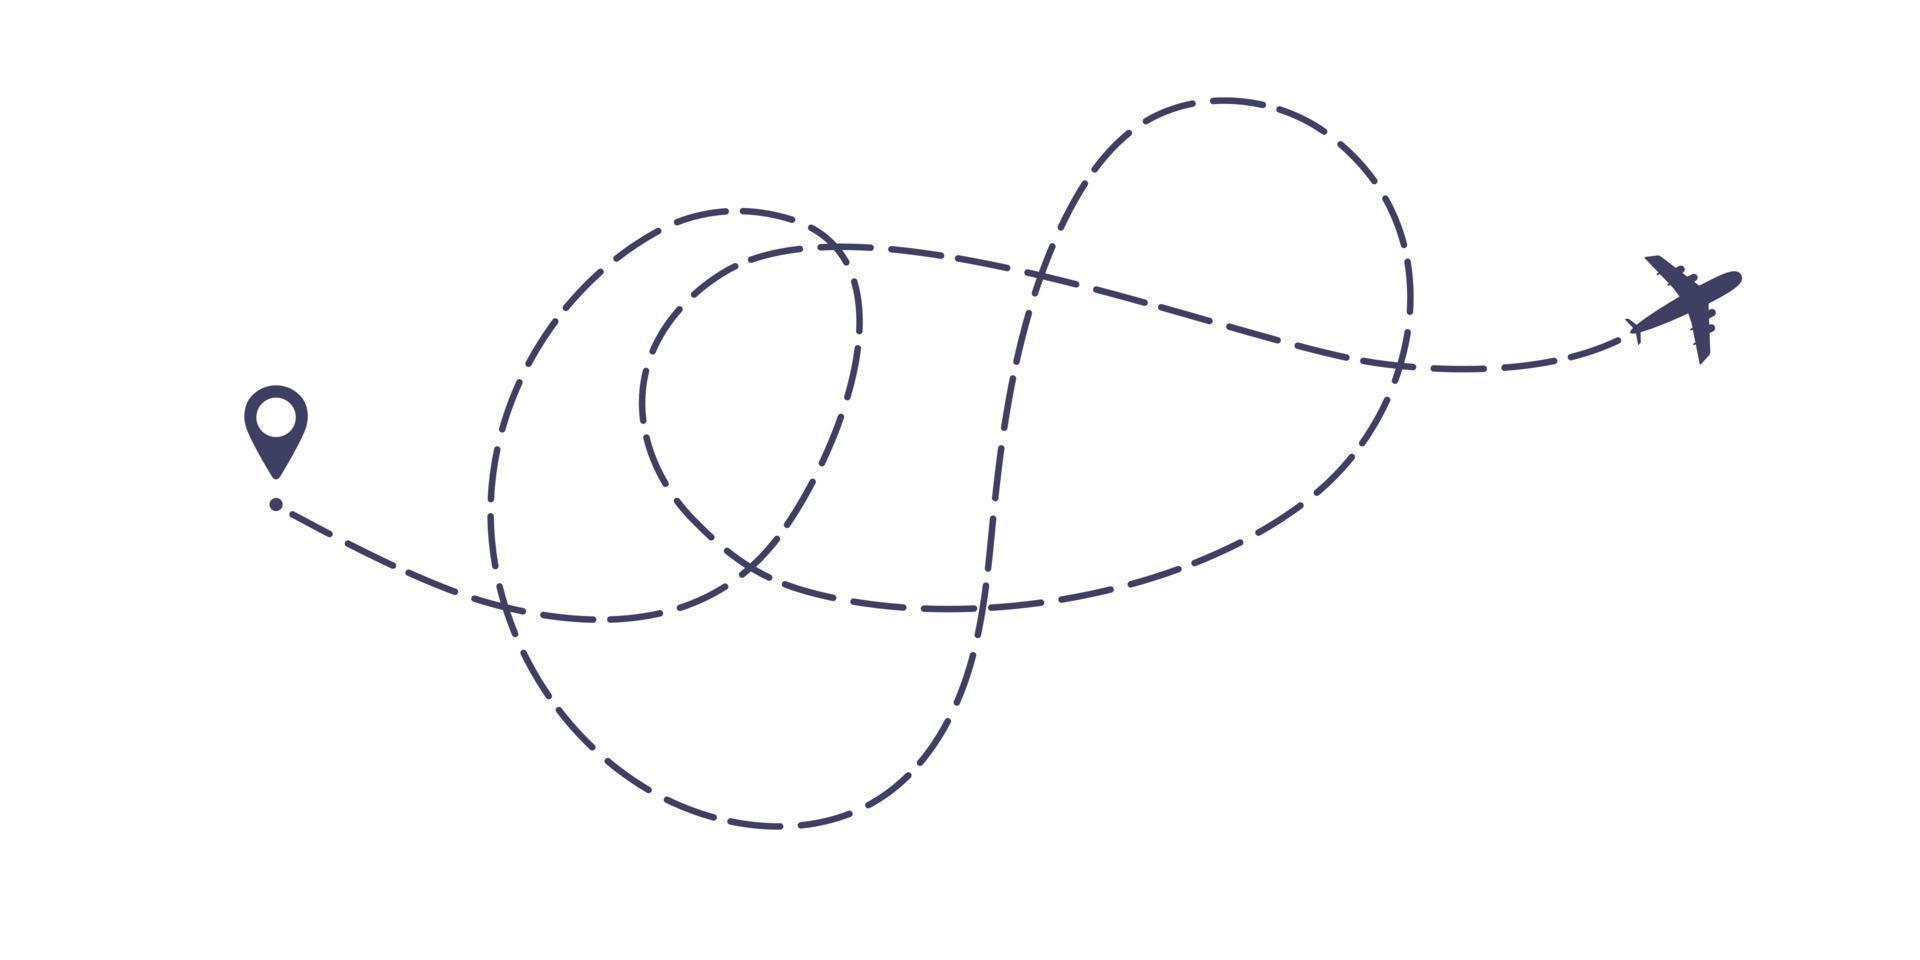 avión línea discontinua ruta estilo plano diseño vector ilustración aislado sobre fondo blanco.